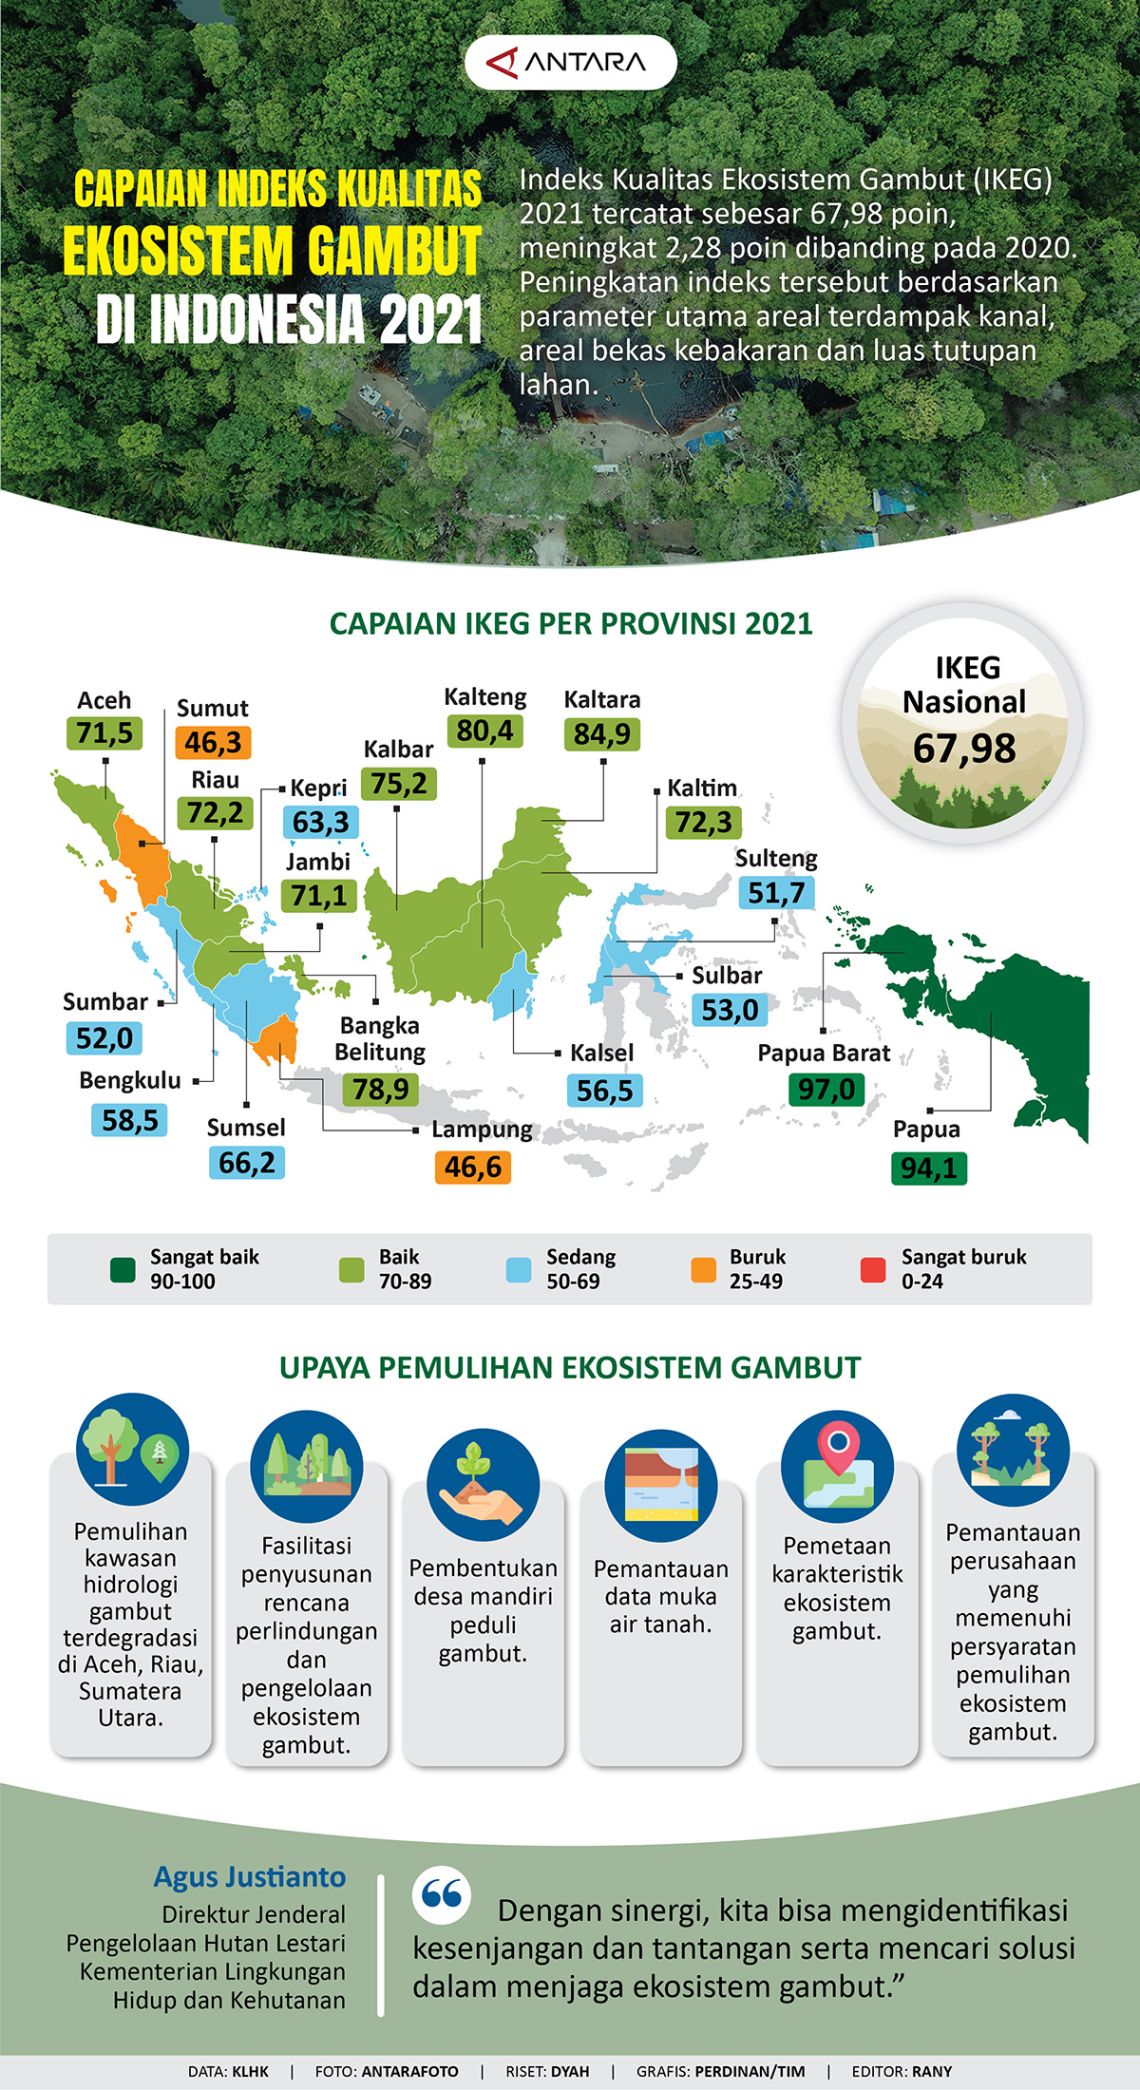 Capaian indeks ekosistem gambut di Indonesia 2021